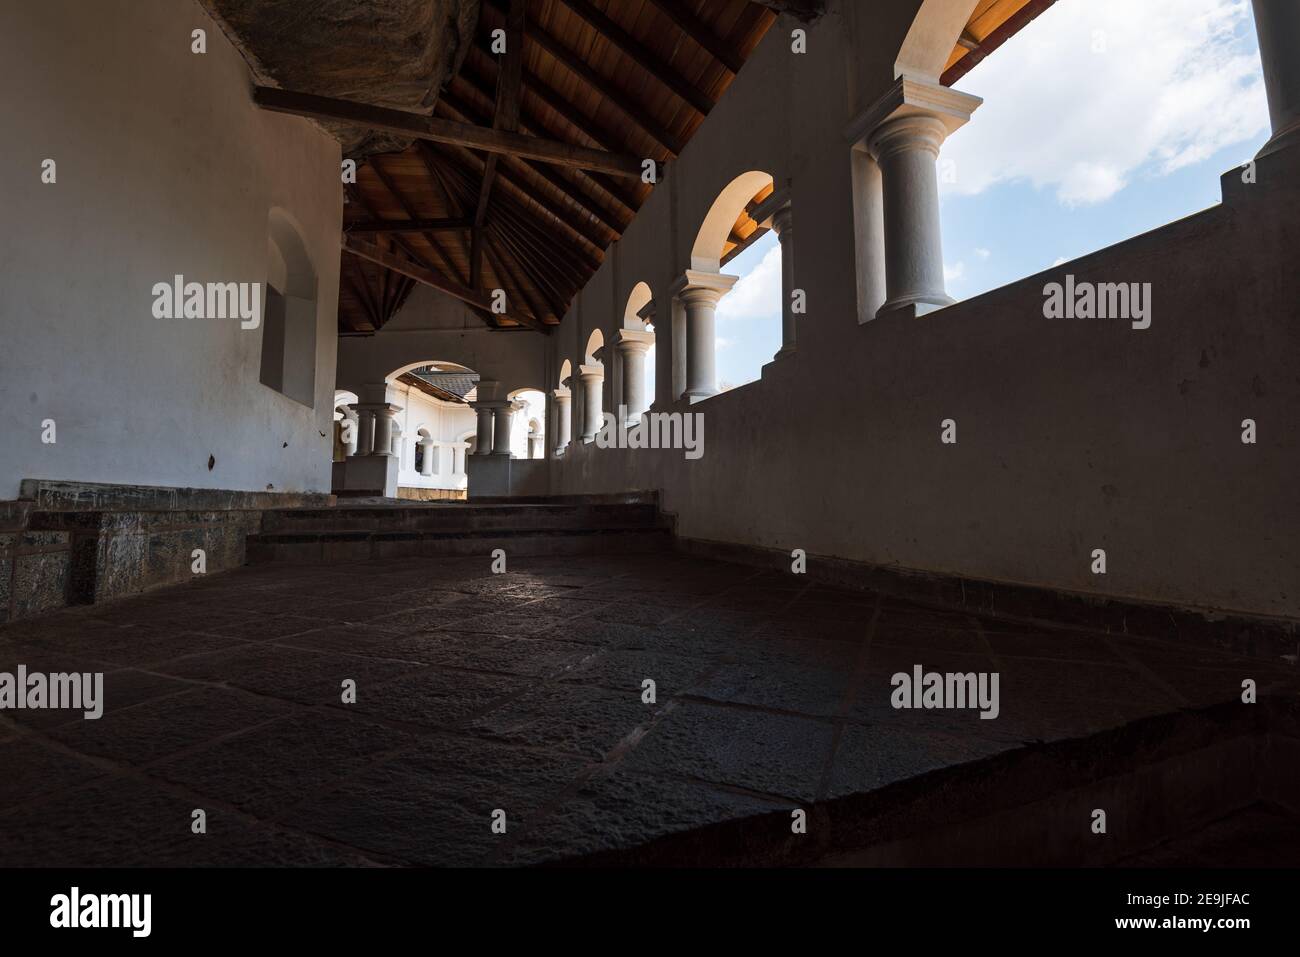 Interior Architecture of the temple at dambulla, Sri Lanka Stock Photo